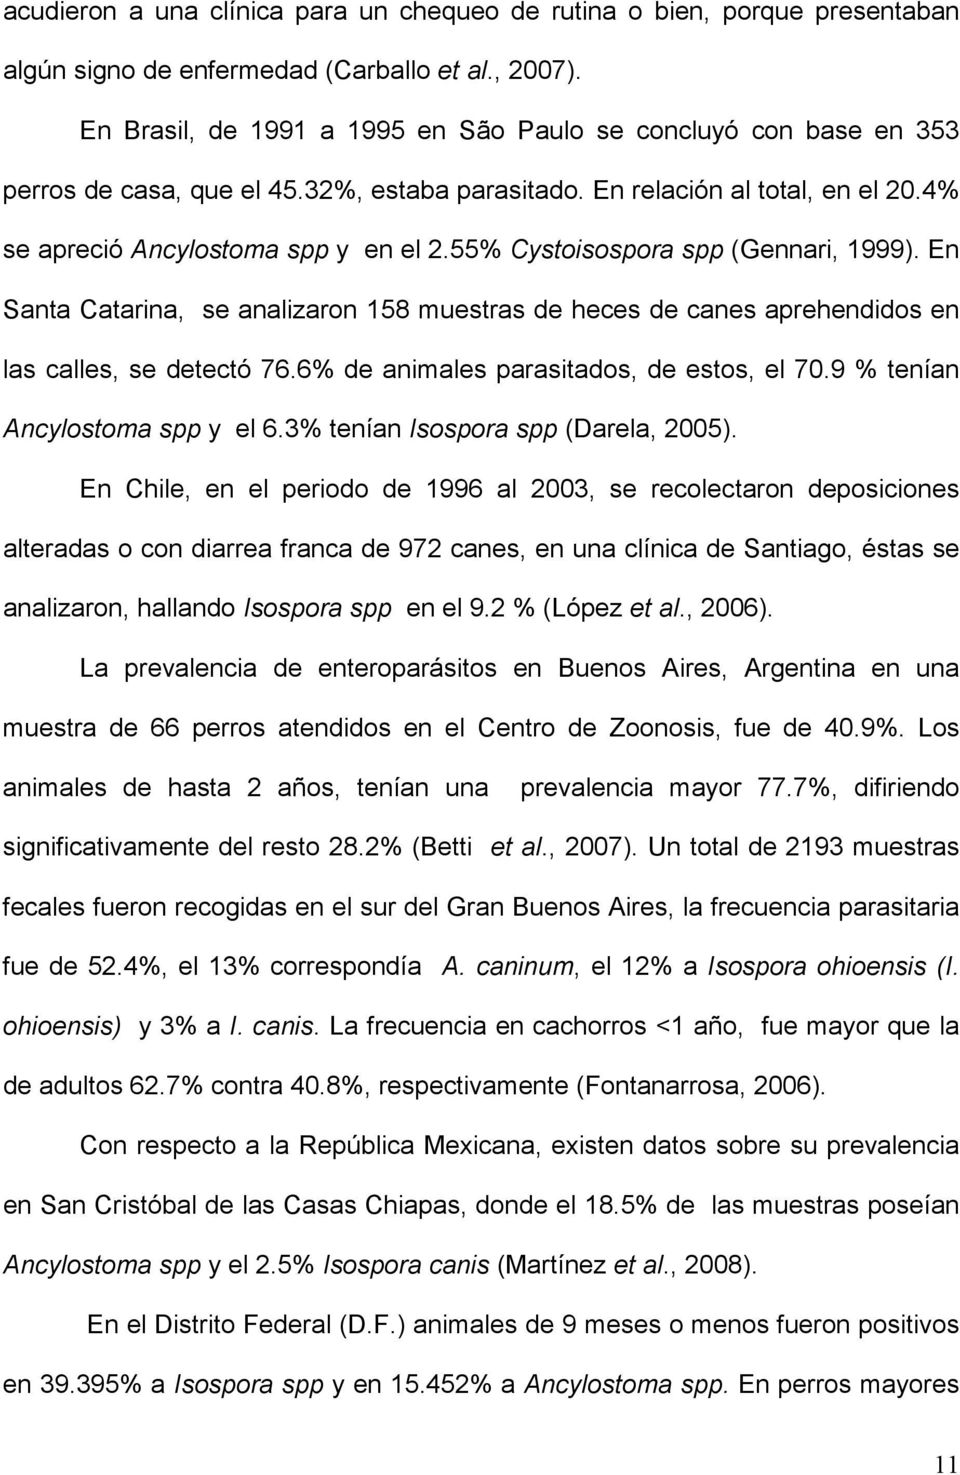 55% Cystoisospora spp (Gennari, 1999). En Santa Catarina, se analizaron 158 muestras de heces de canes aprehendidos en las calles, se detectó 76.6% de animales parasitados, de estos, el 70.